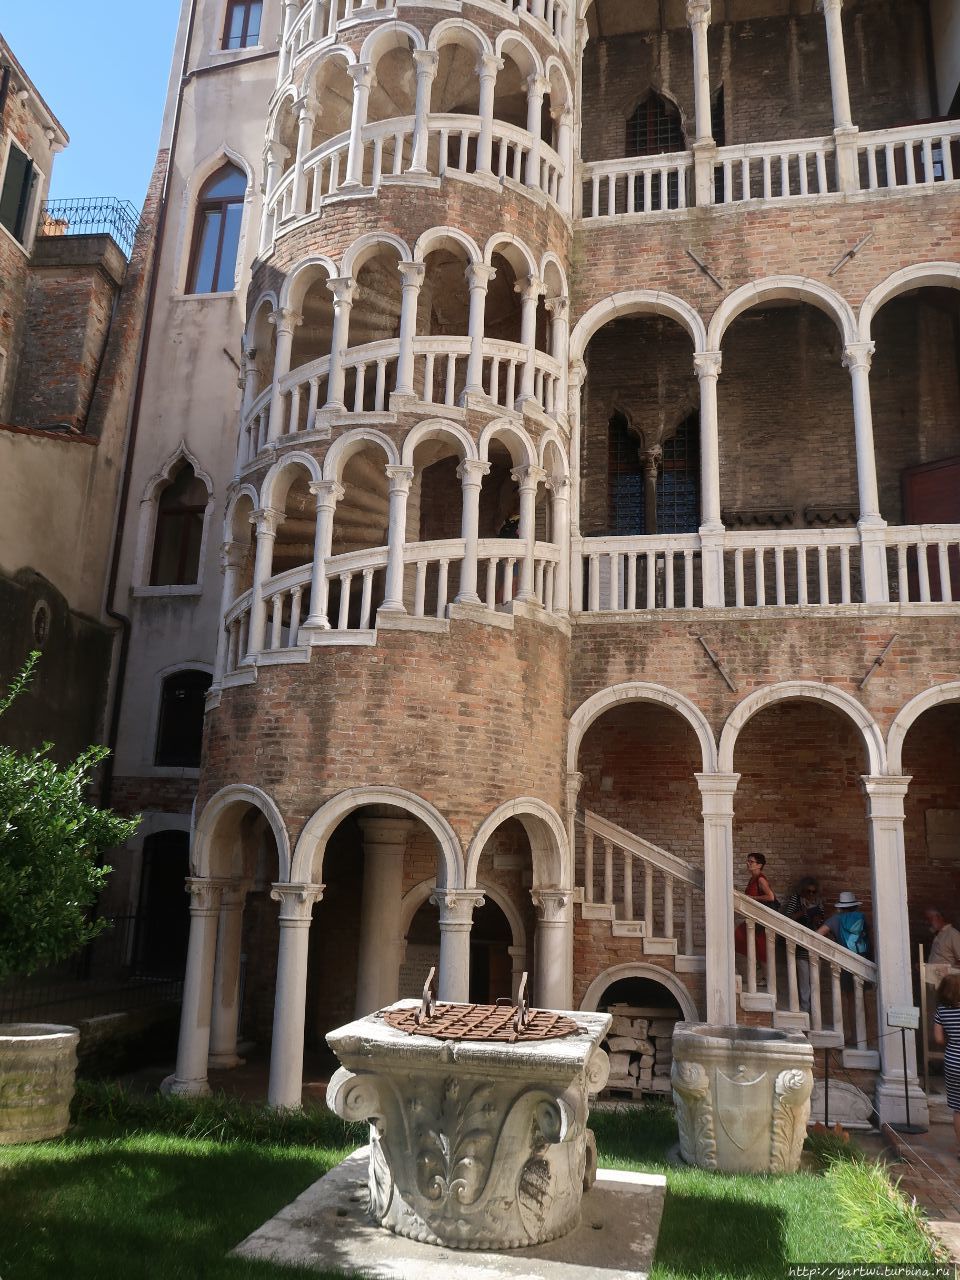 Палаццо Контарини дель Боволо. Главная особенность дворца — ажурная винтовая лестница.Дворец расположен в мало посещаемом переулке возле Кампо Манин, недалеко от моста Риальто. Венеция, Италия